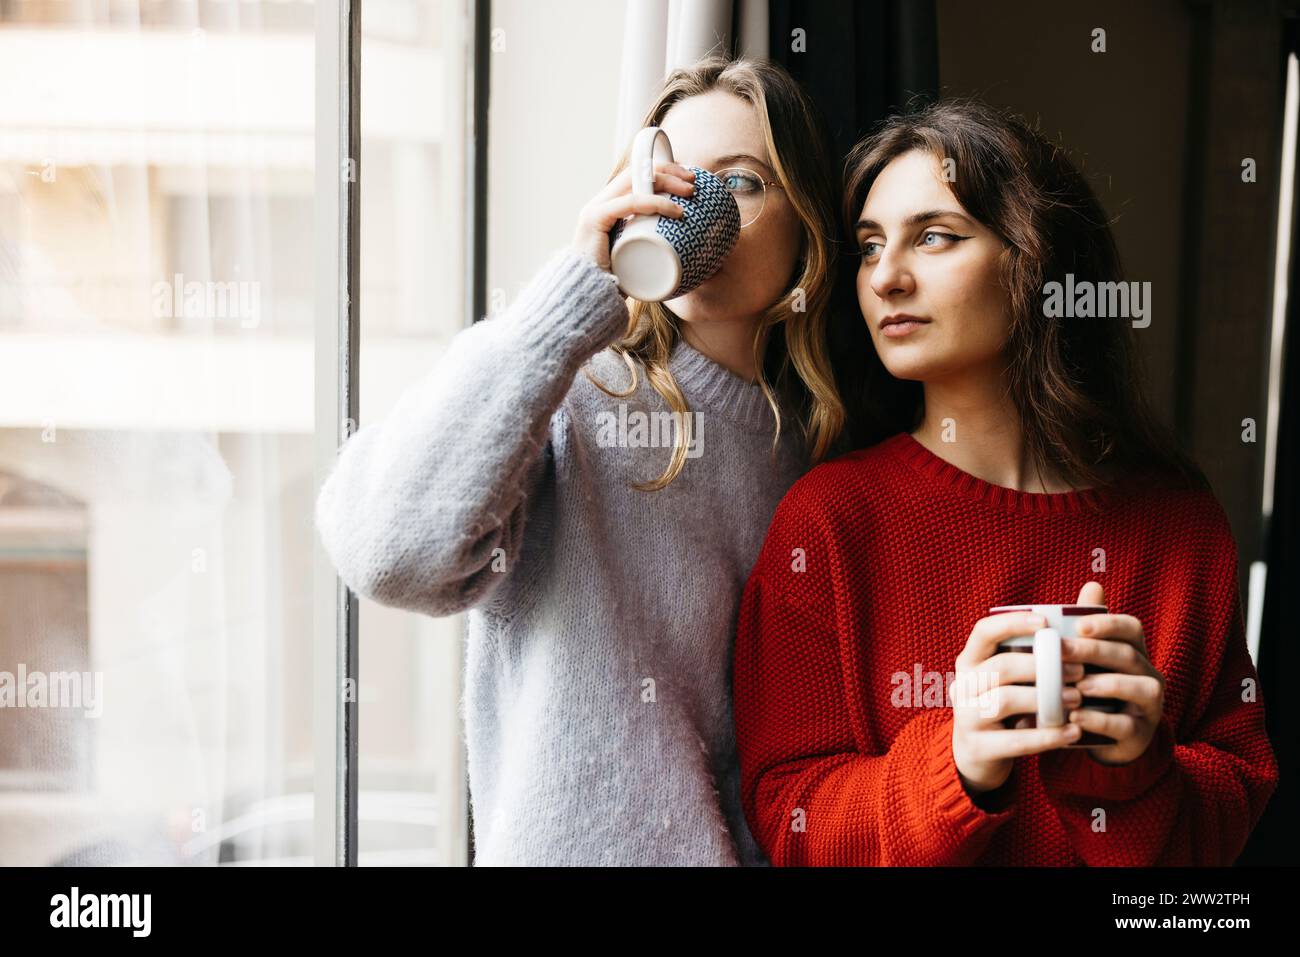 Deux jeunes femmes debout côte à côte, tenant une tasse de thé, près d'une fenêtre à l'intérieur de leur maison, partageant un moment de compagnie dans un et intime Banque D'Images